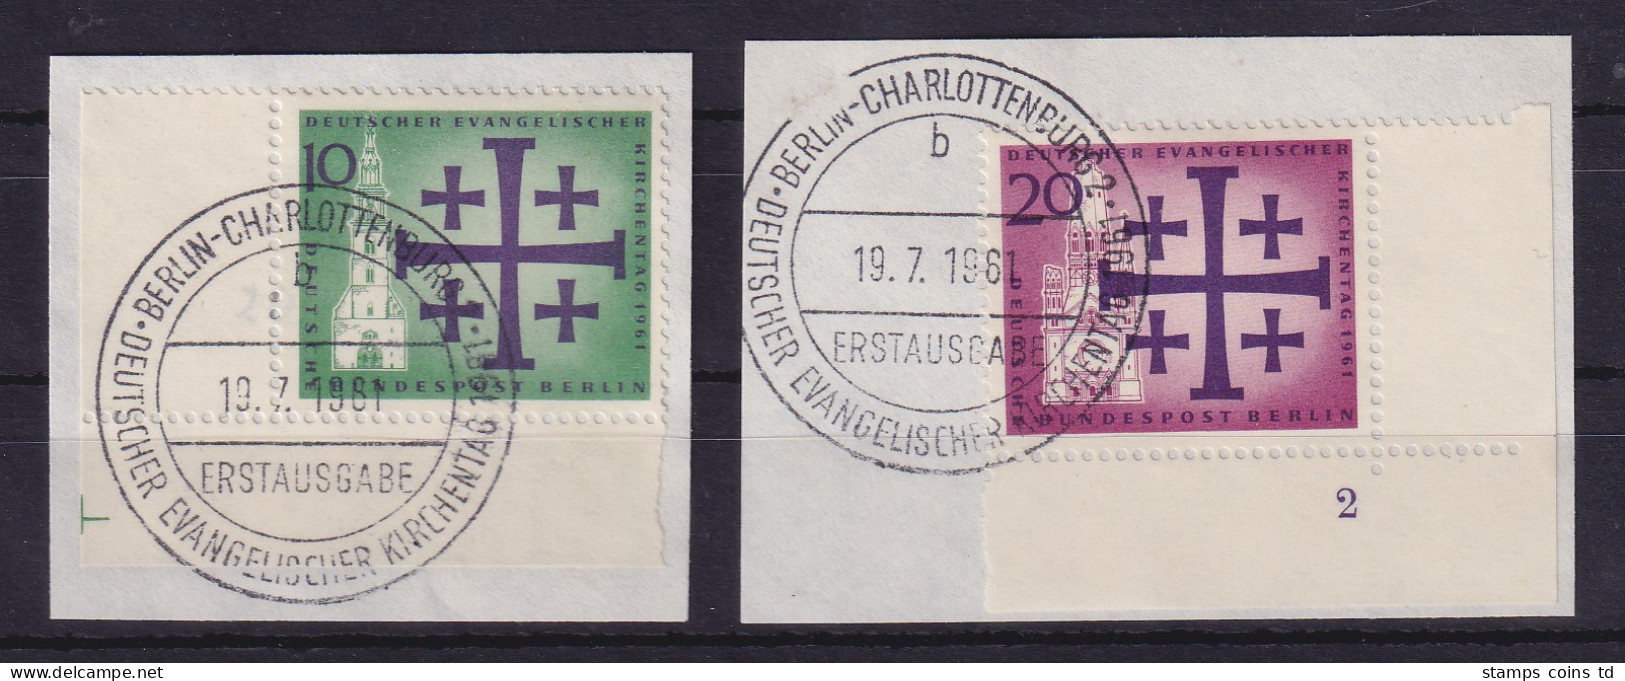 Berlin 1960 Kirchentag Mi-Nr. 215-216 Eckrandstücke Mit ET-So.-O A. Briefstücken - Gebraucht